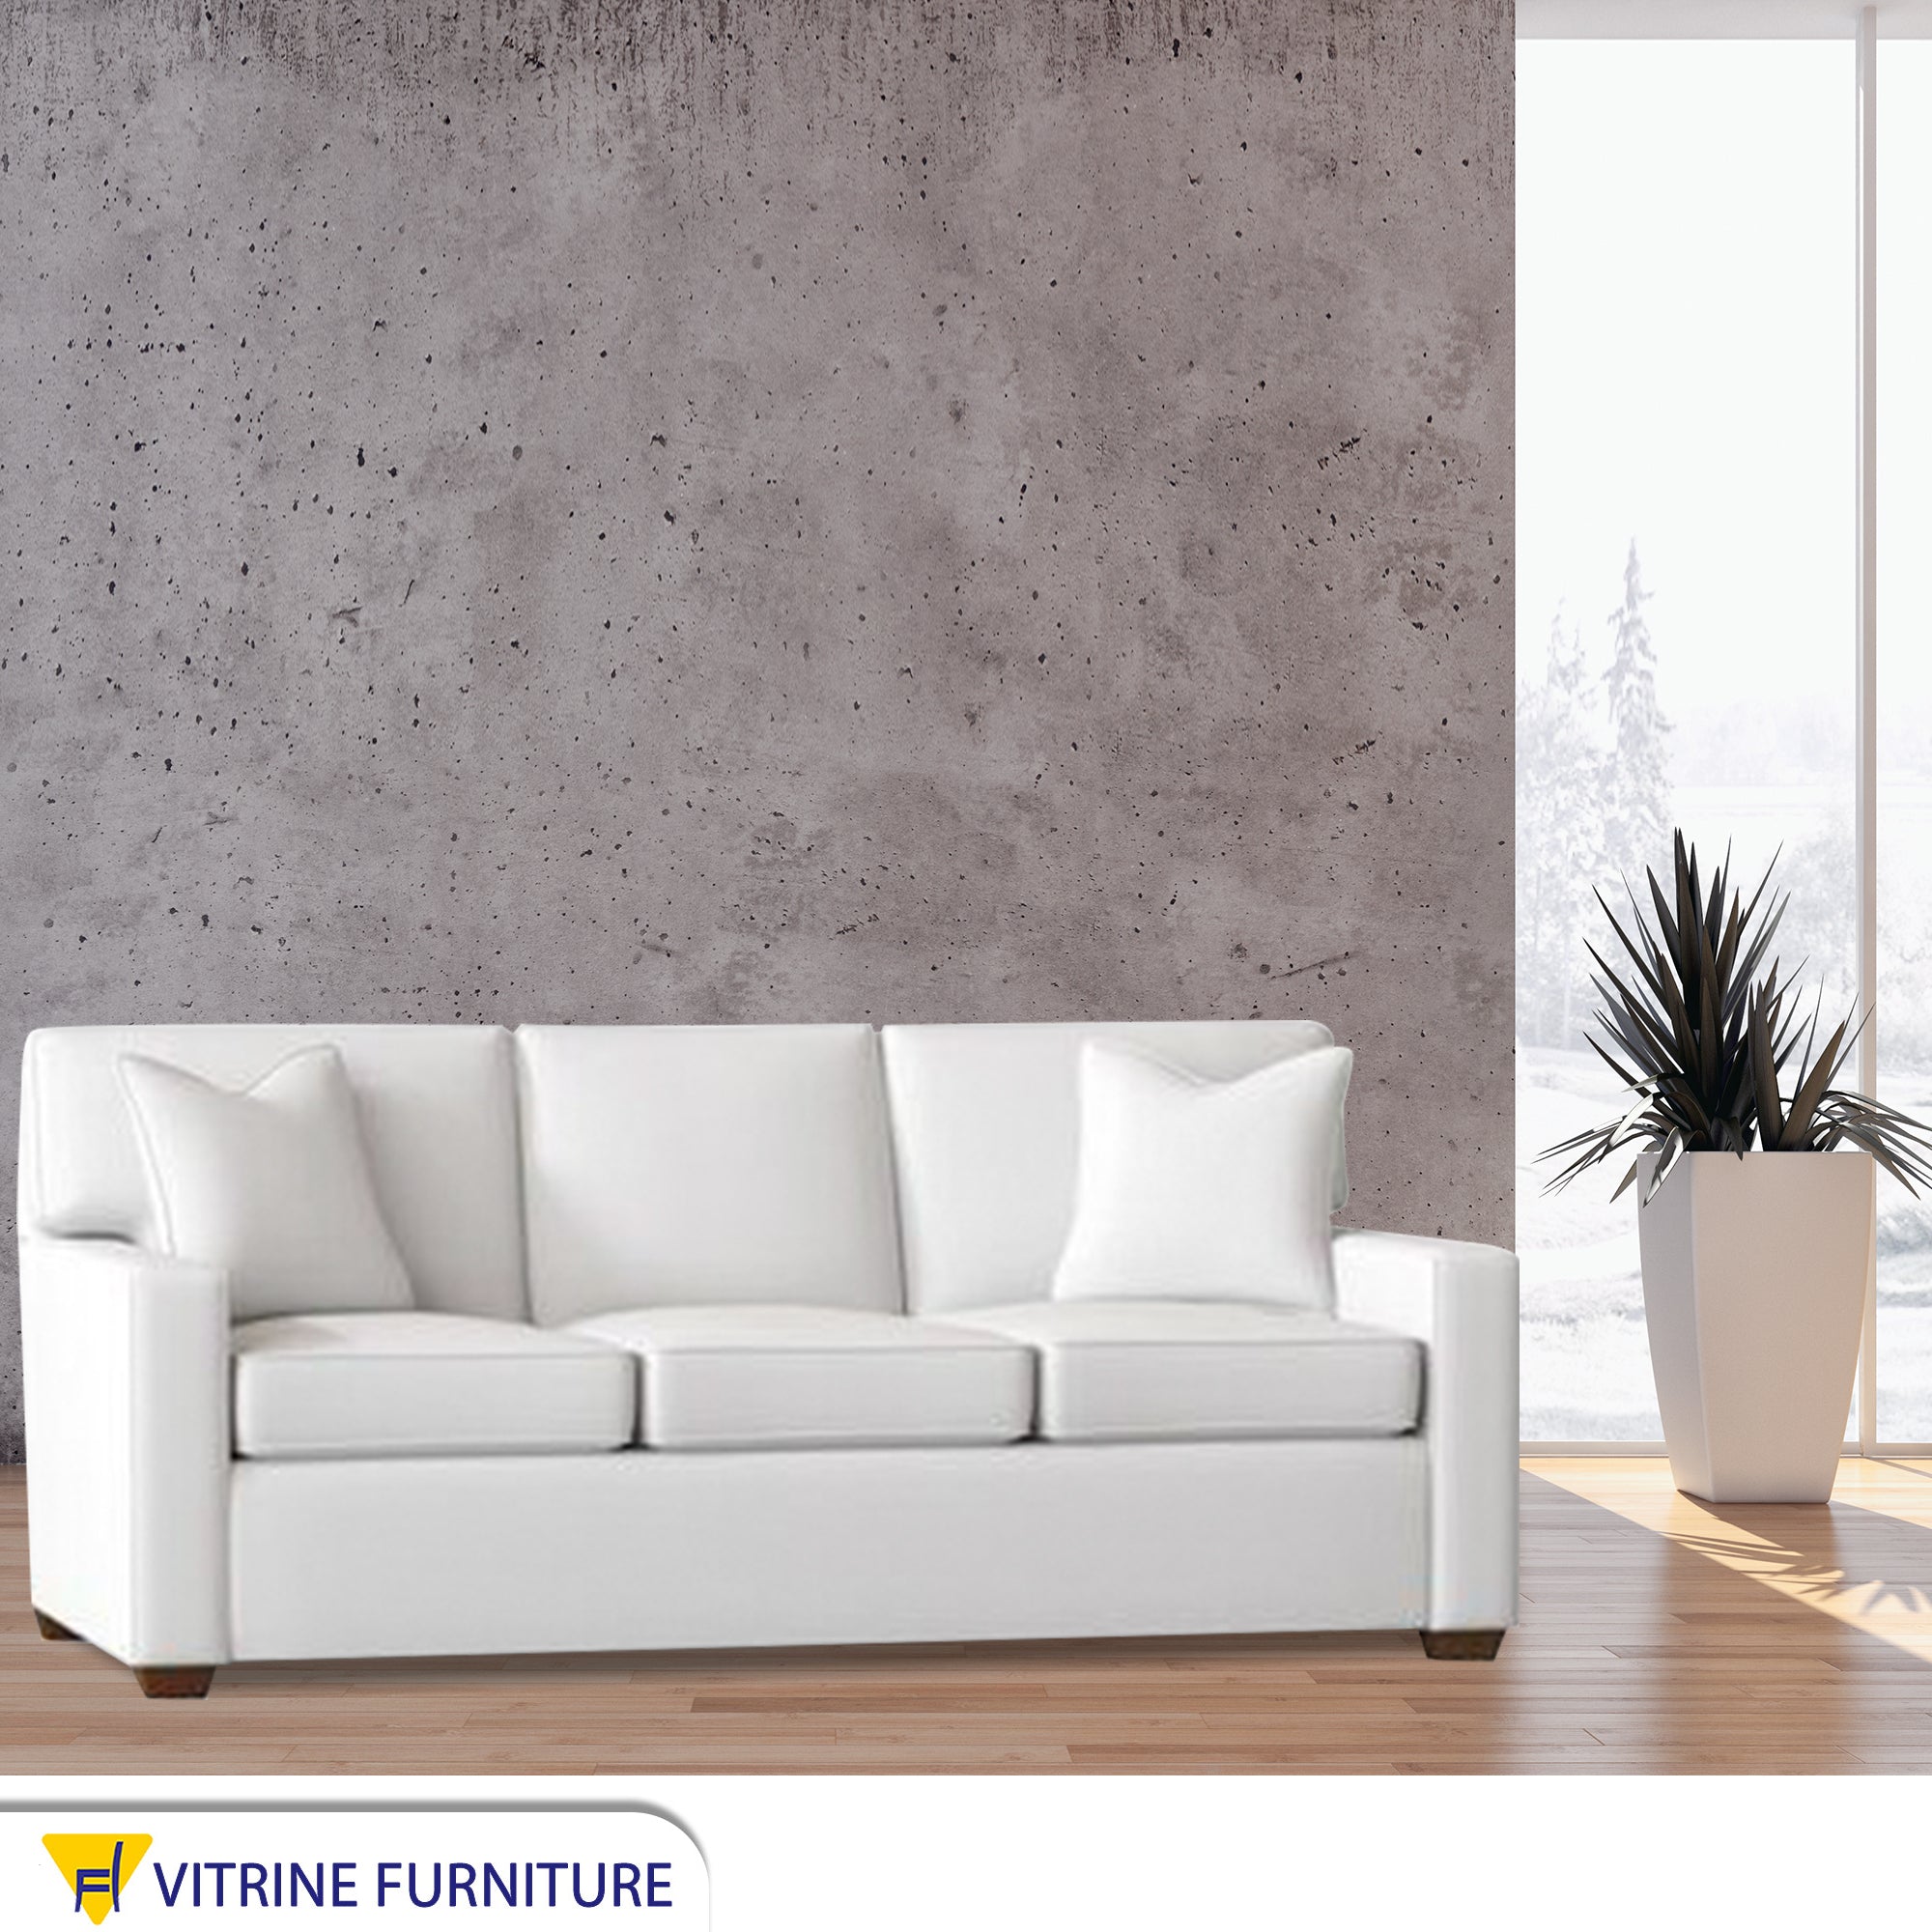 Triple sofa in elegant white color